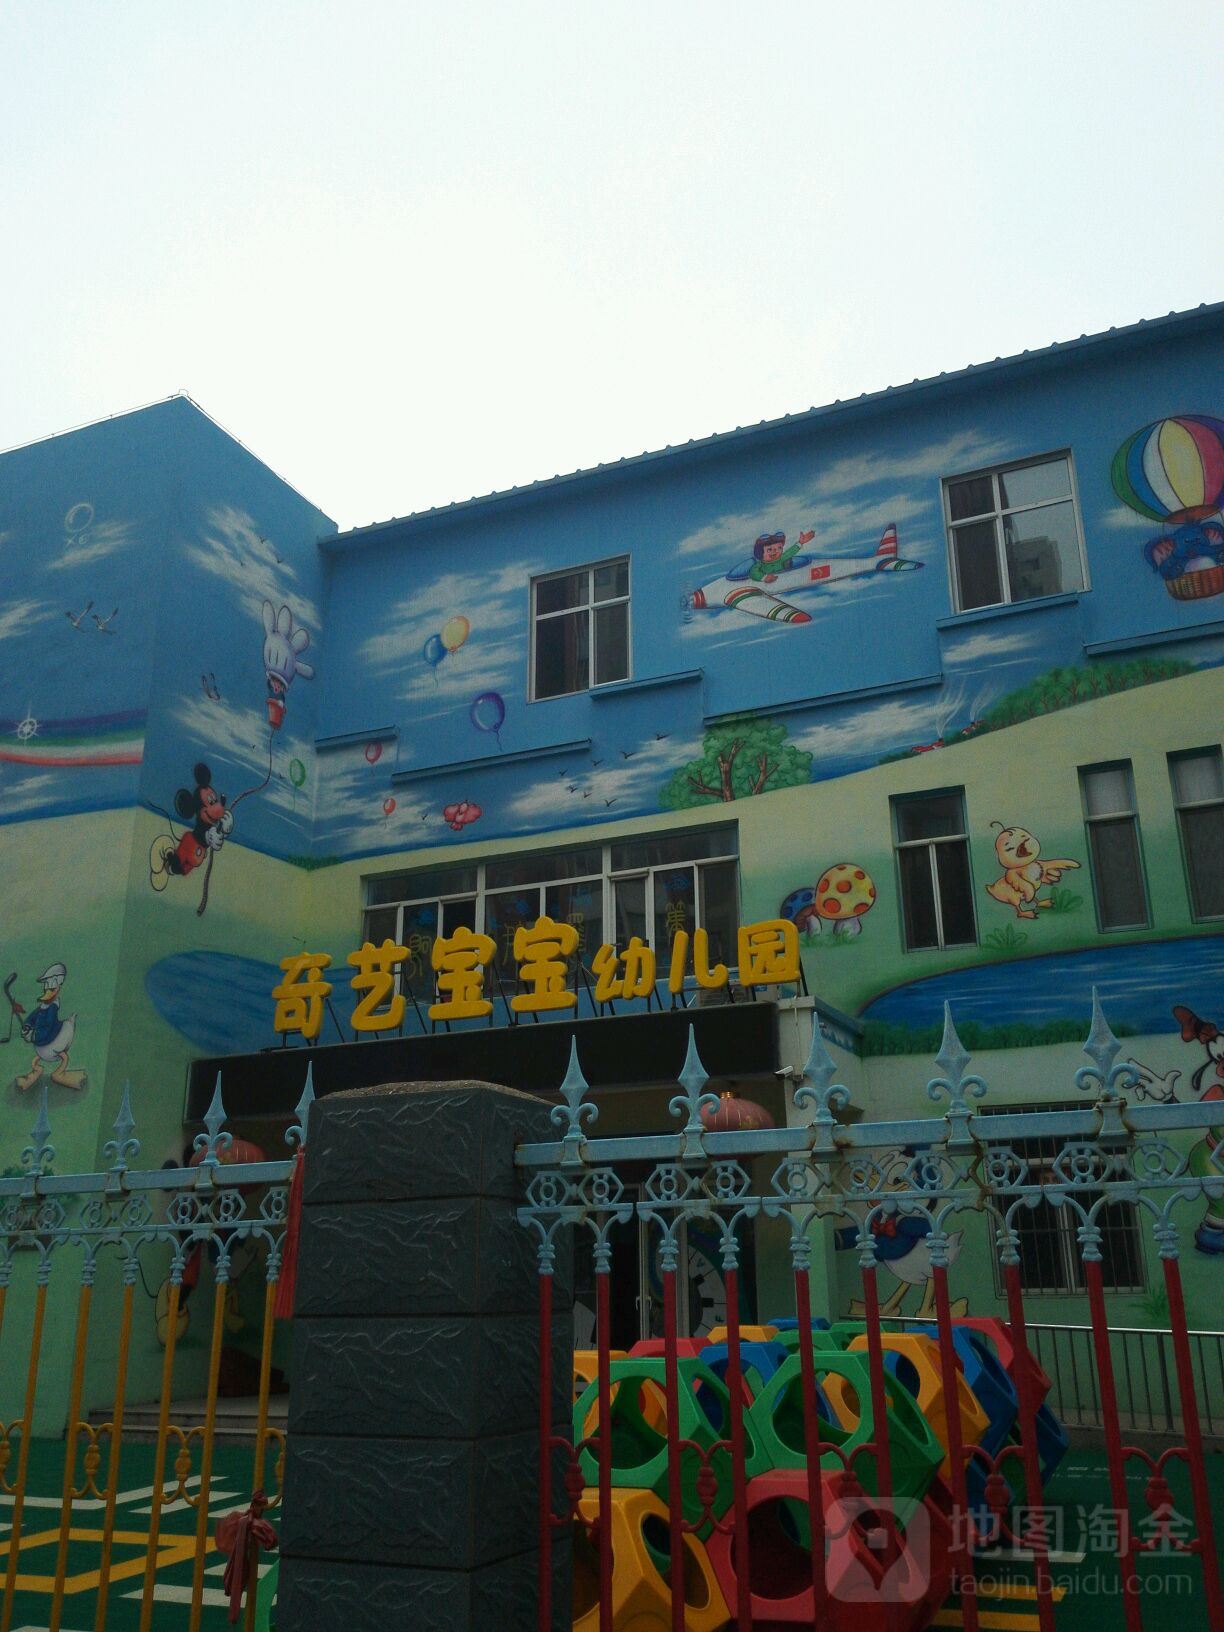 石家庄市奇艺宝宝幼儿园的图片